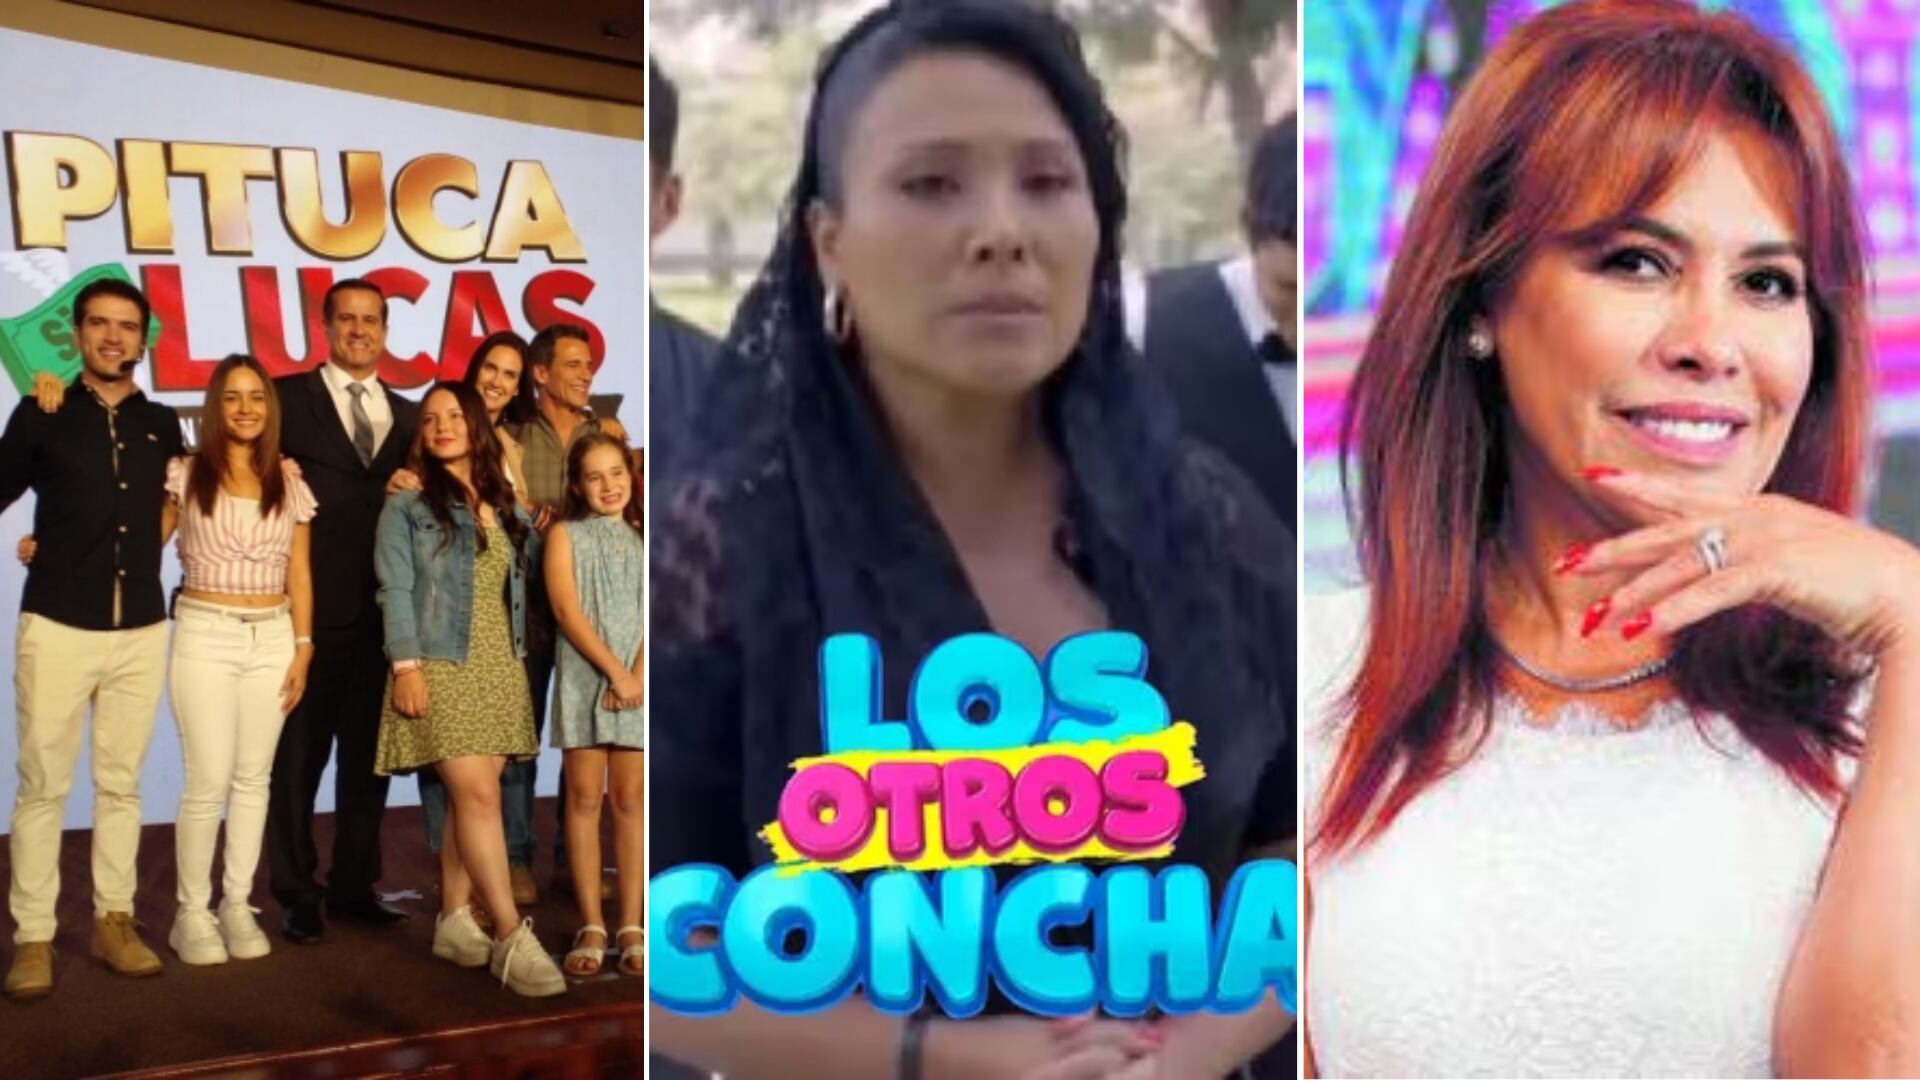 Pituca sin Lucas, Los otros Concha y Magaly TV La Firme se enfrentaron en la programación de la TV peruana.